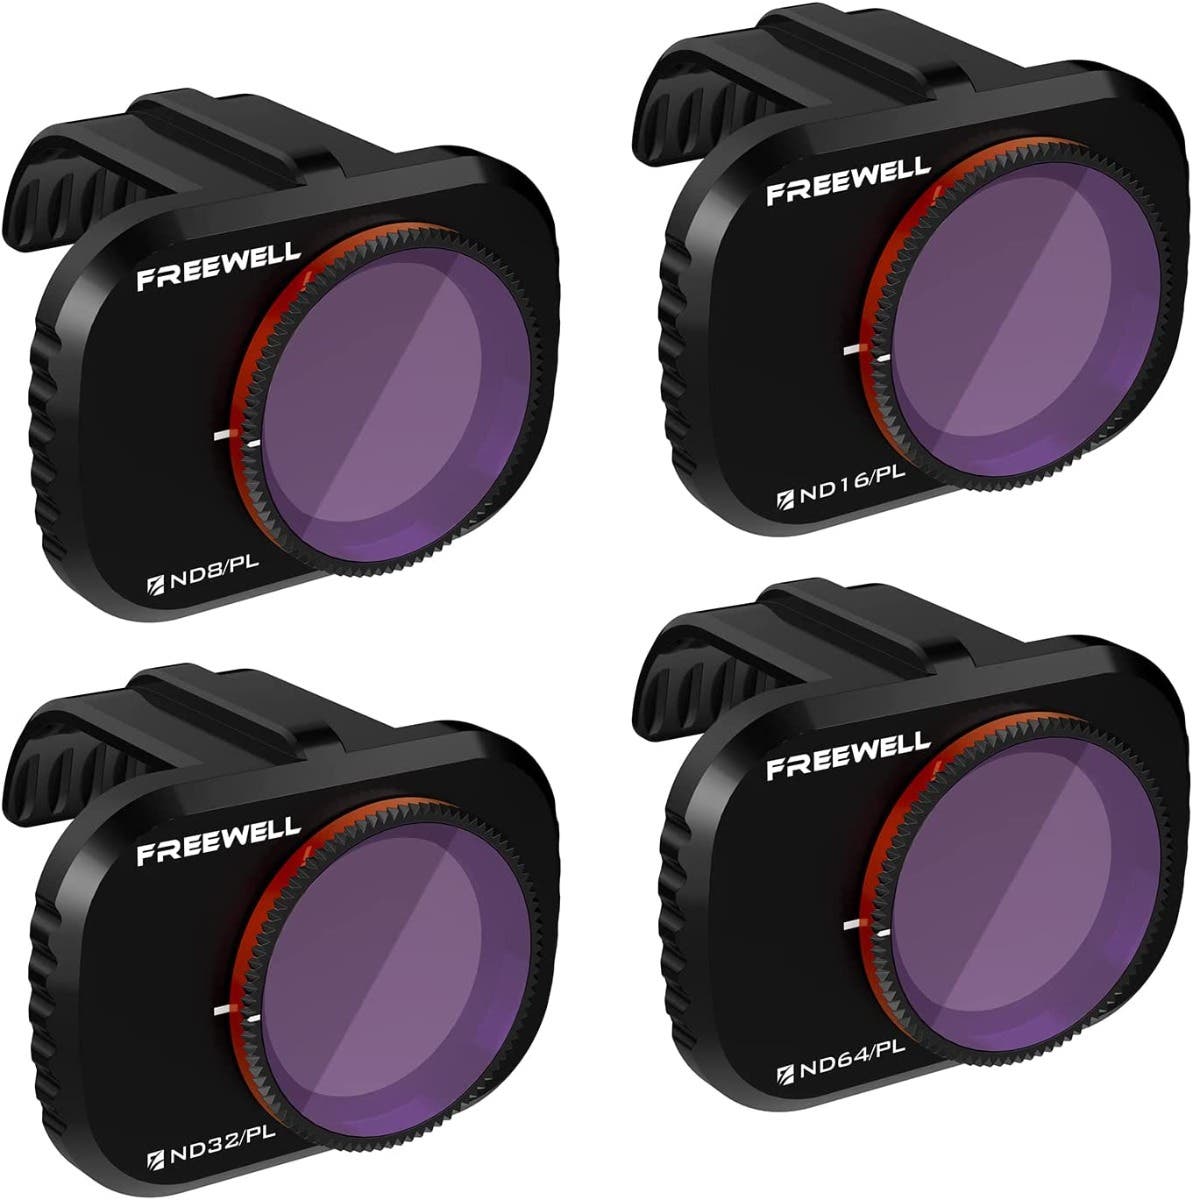 Freewell Bright Day ND/PL Lens Filter 4-Pack Kit for DJI Mavic Mini/Mini 2/Mini SE Drone